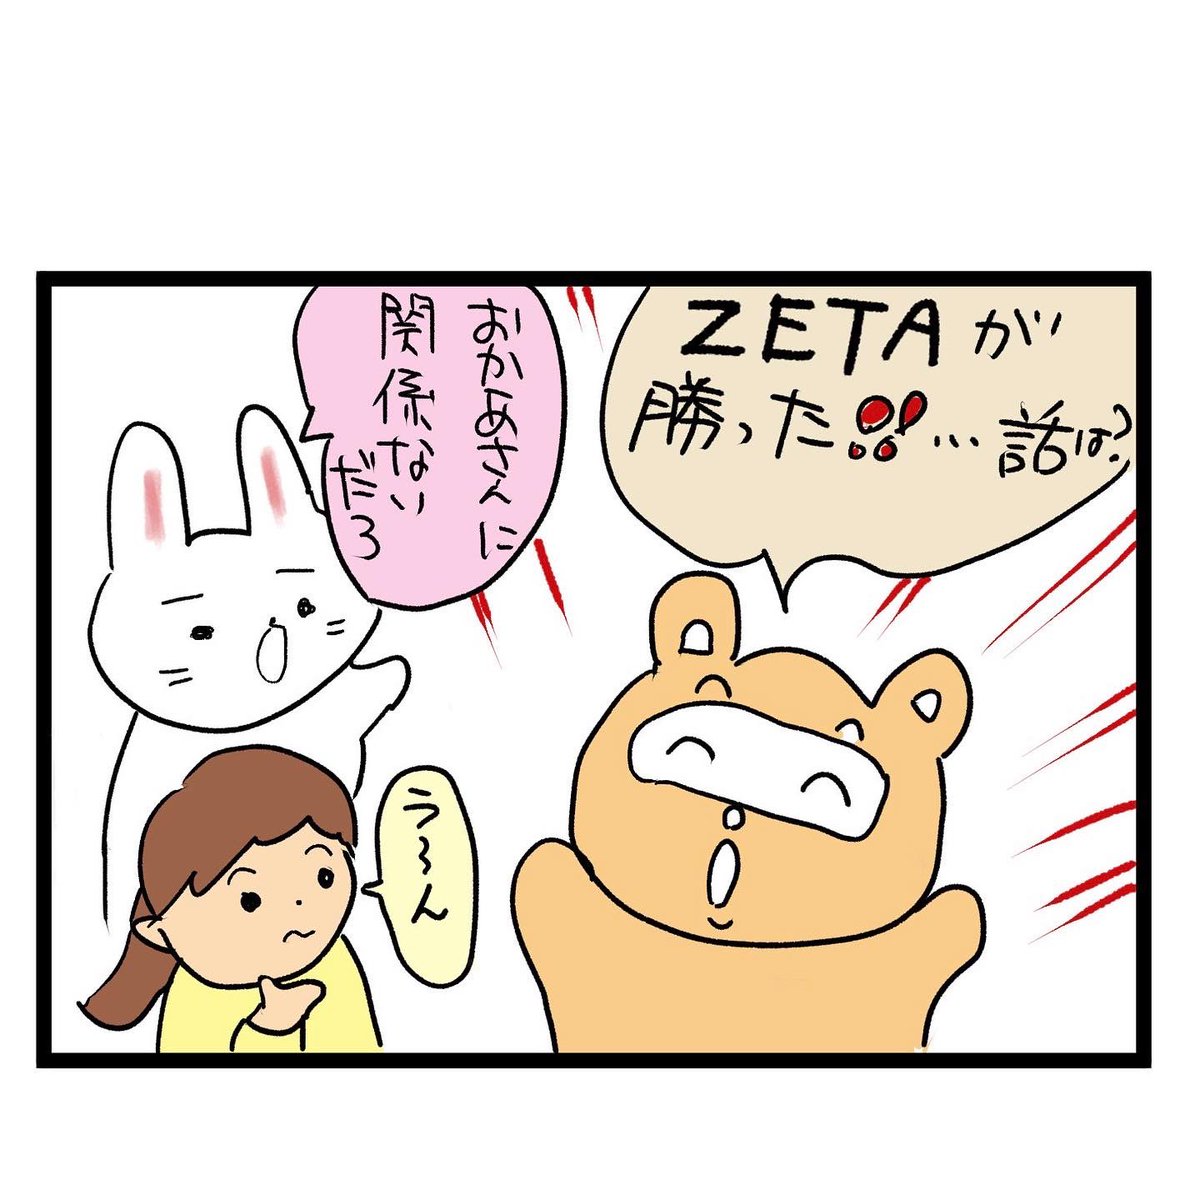 #四コマ漫画
#ZETAWIN 
四コマ漫画のネタ 